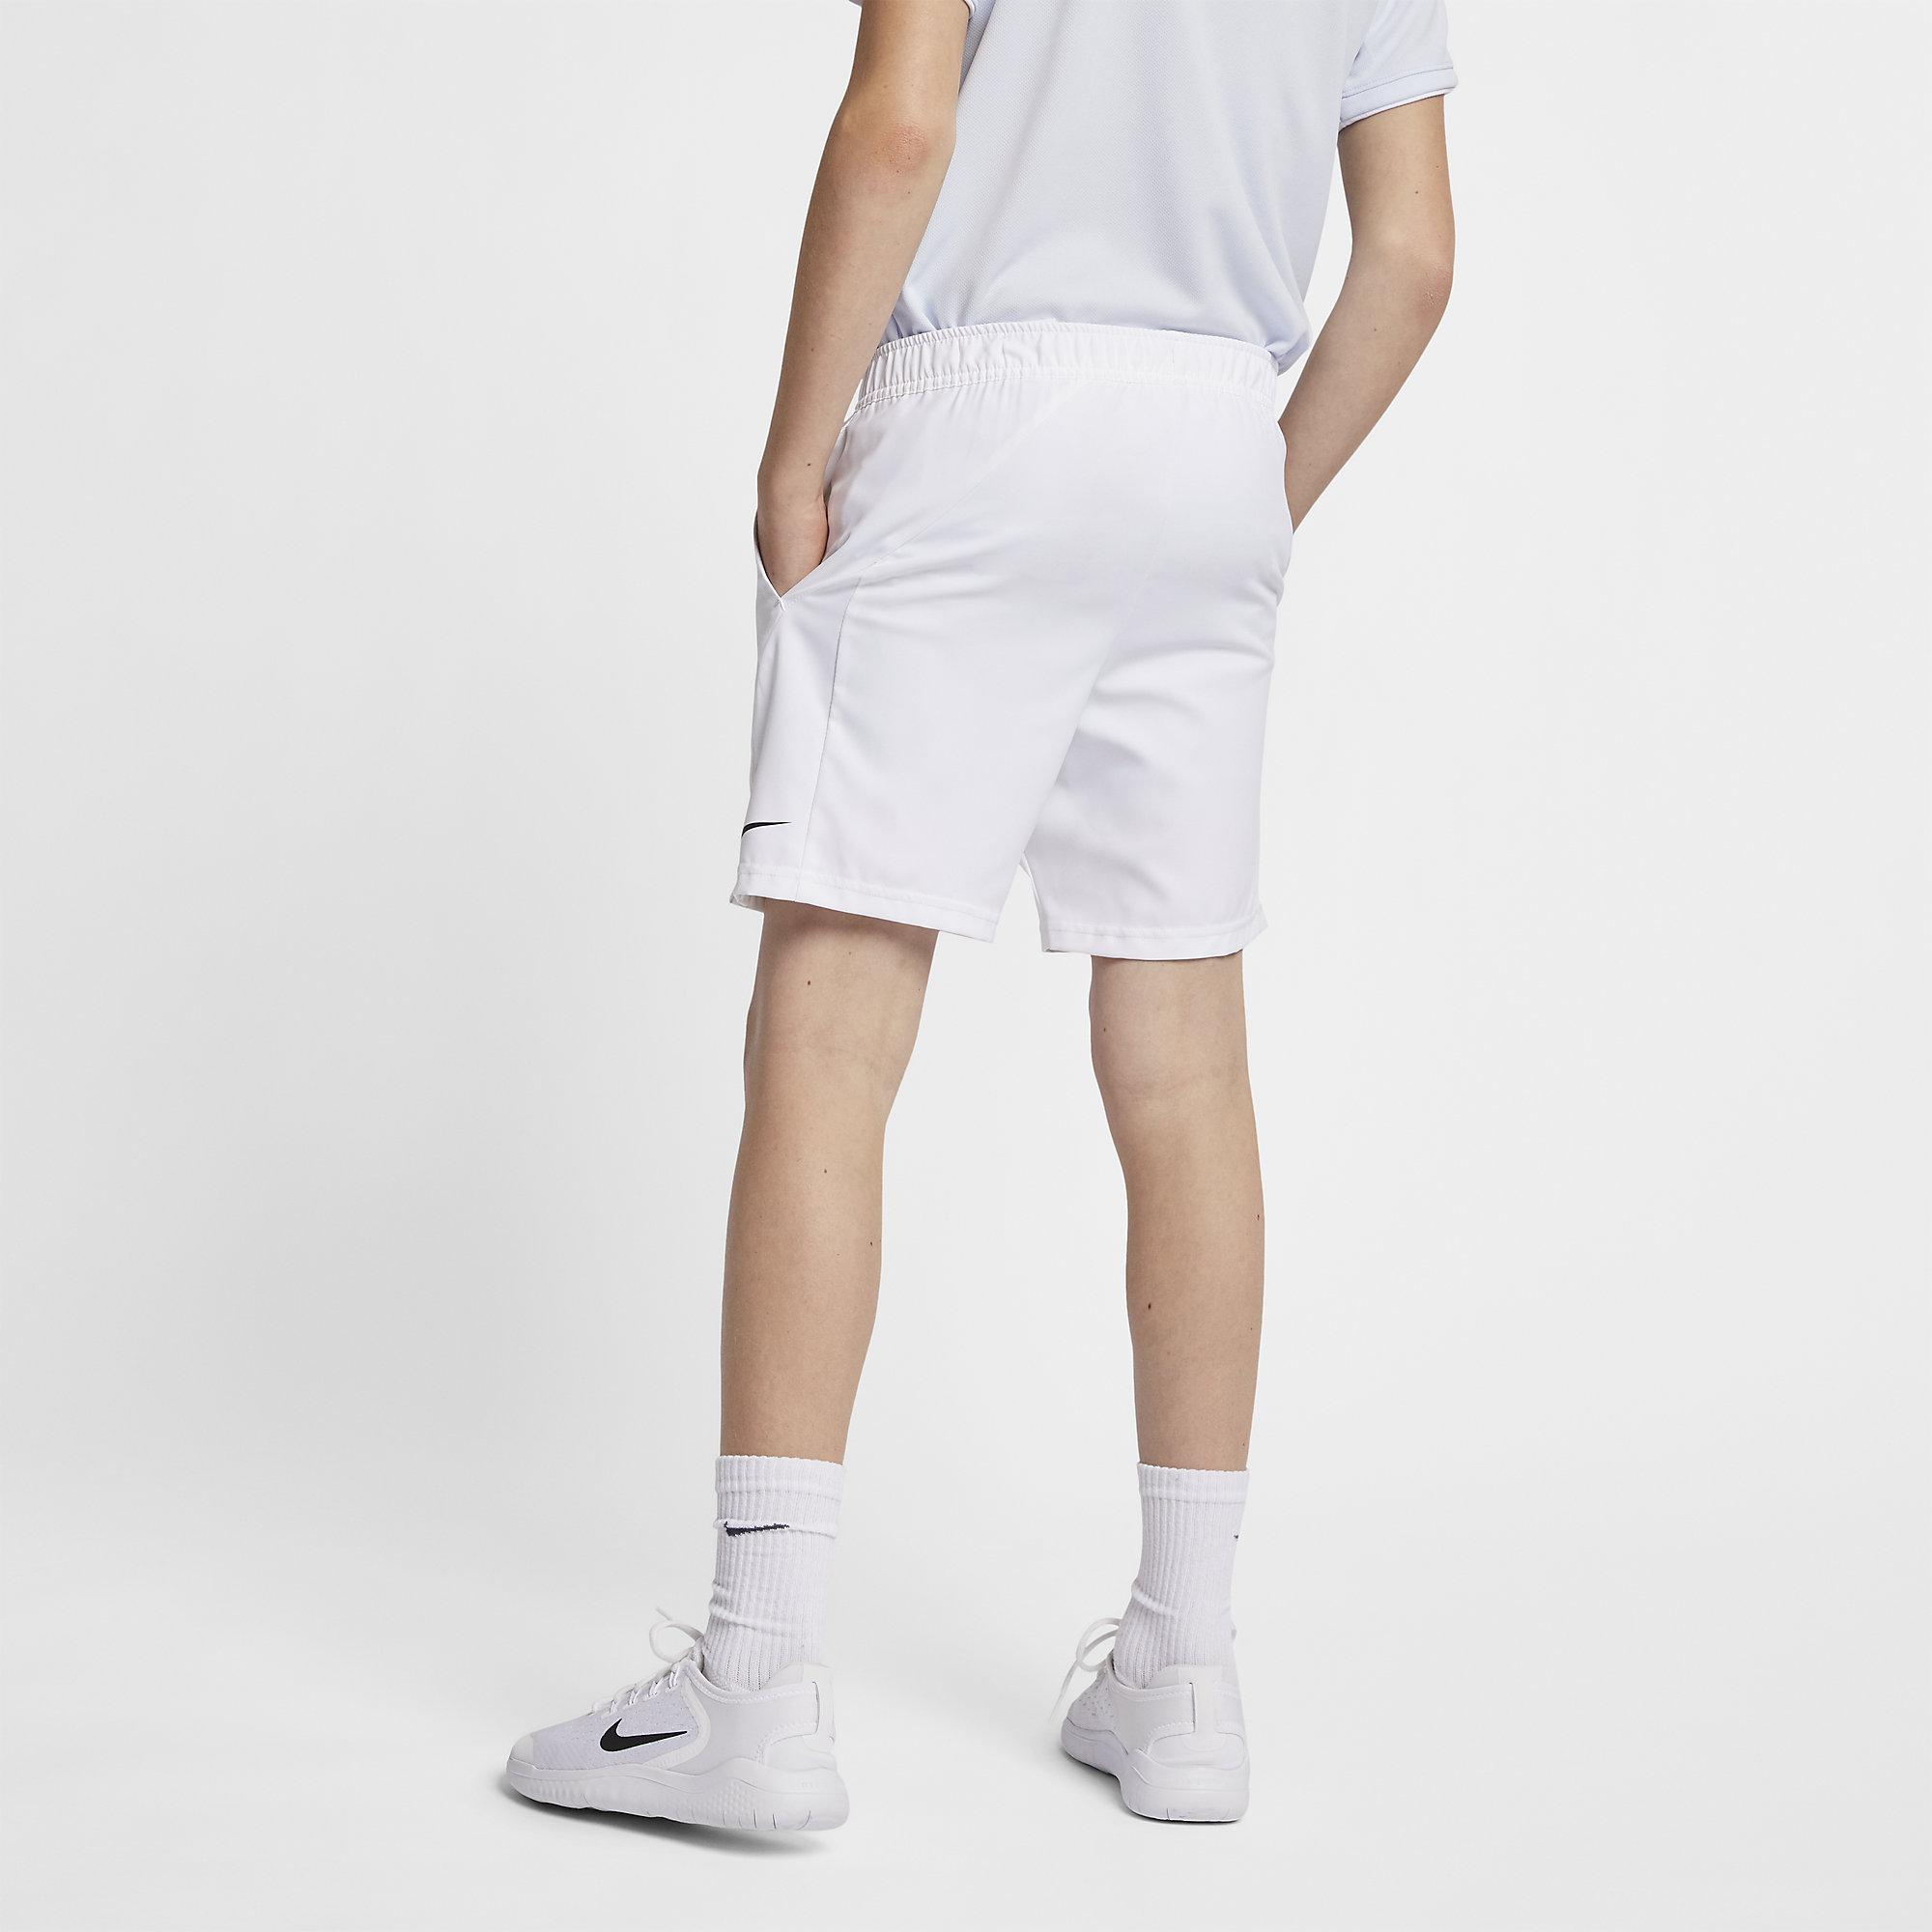 Nike Boys Dri-FIT Tennis Shorts - White - Tennisnuts.com